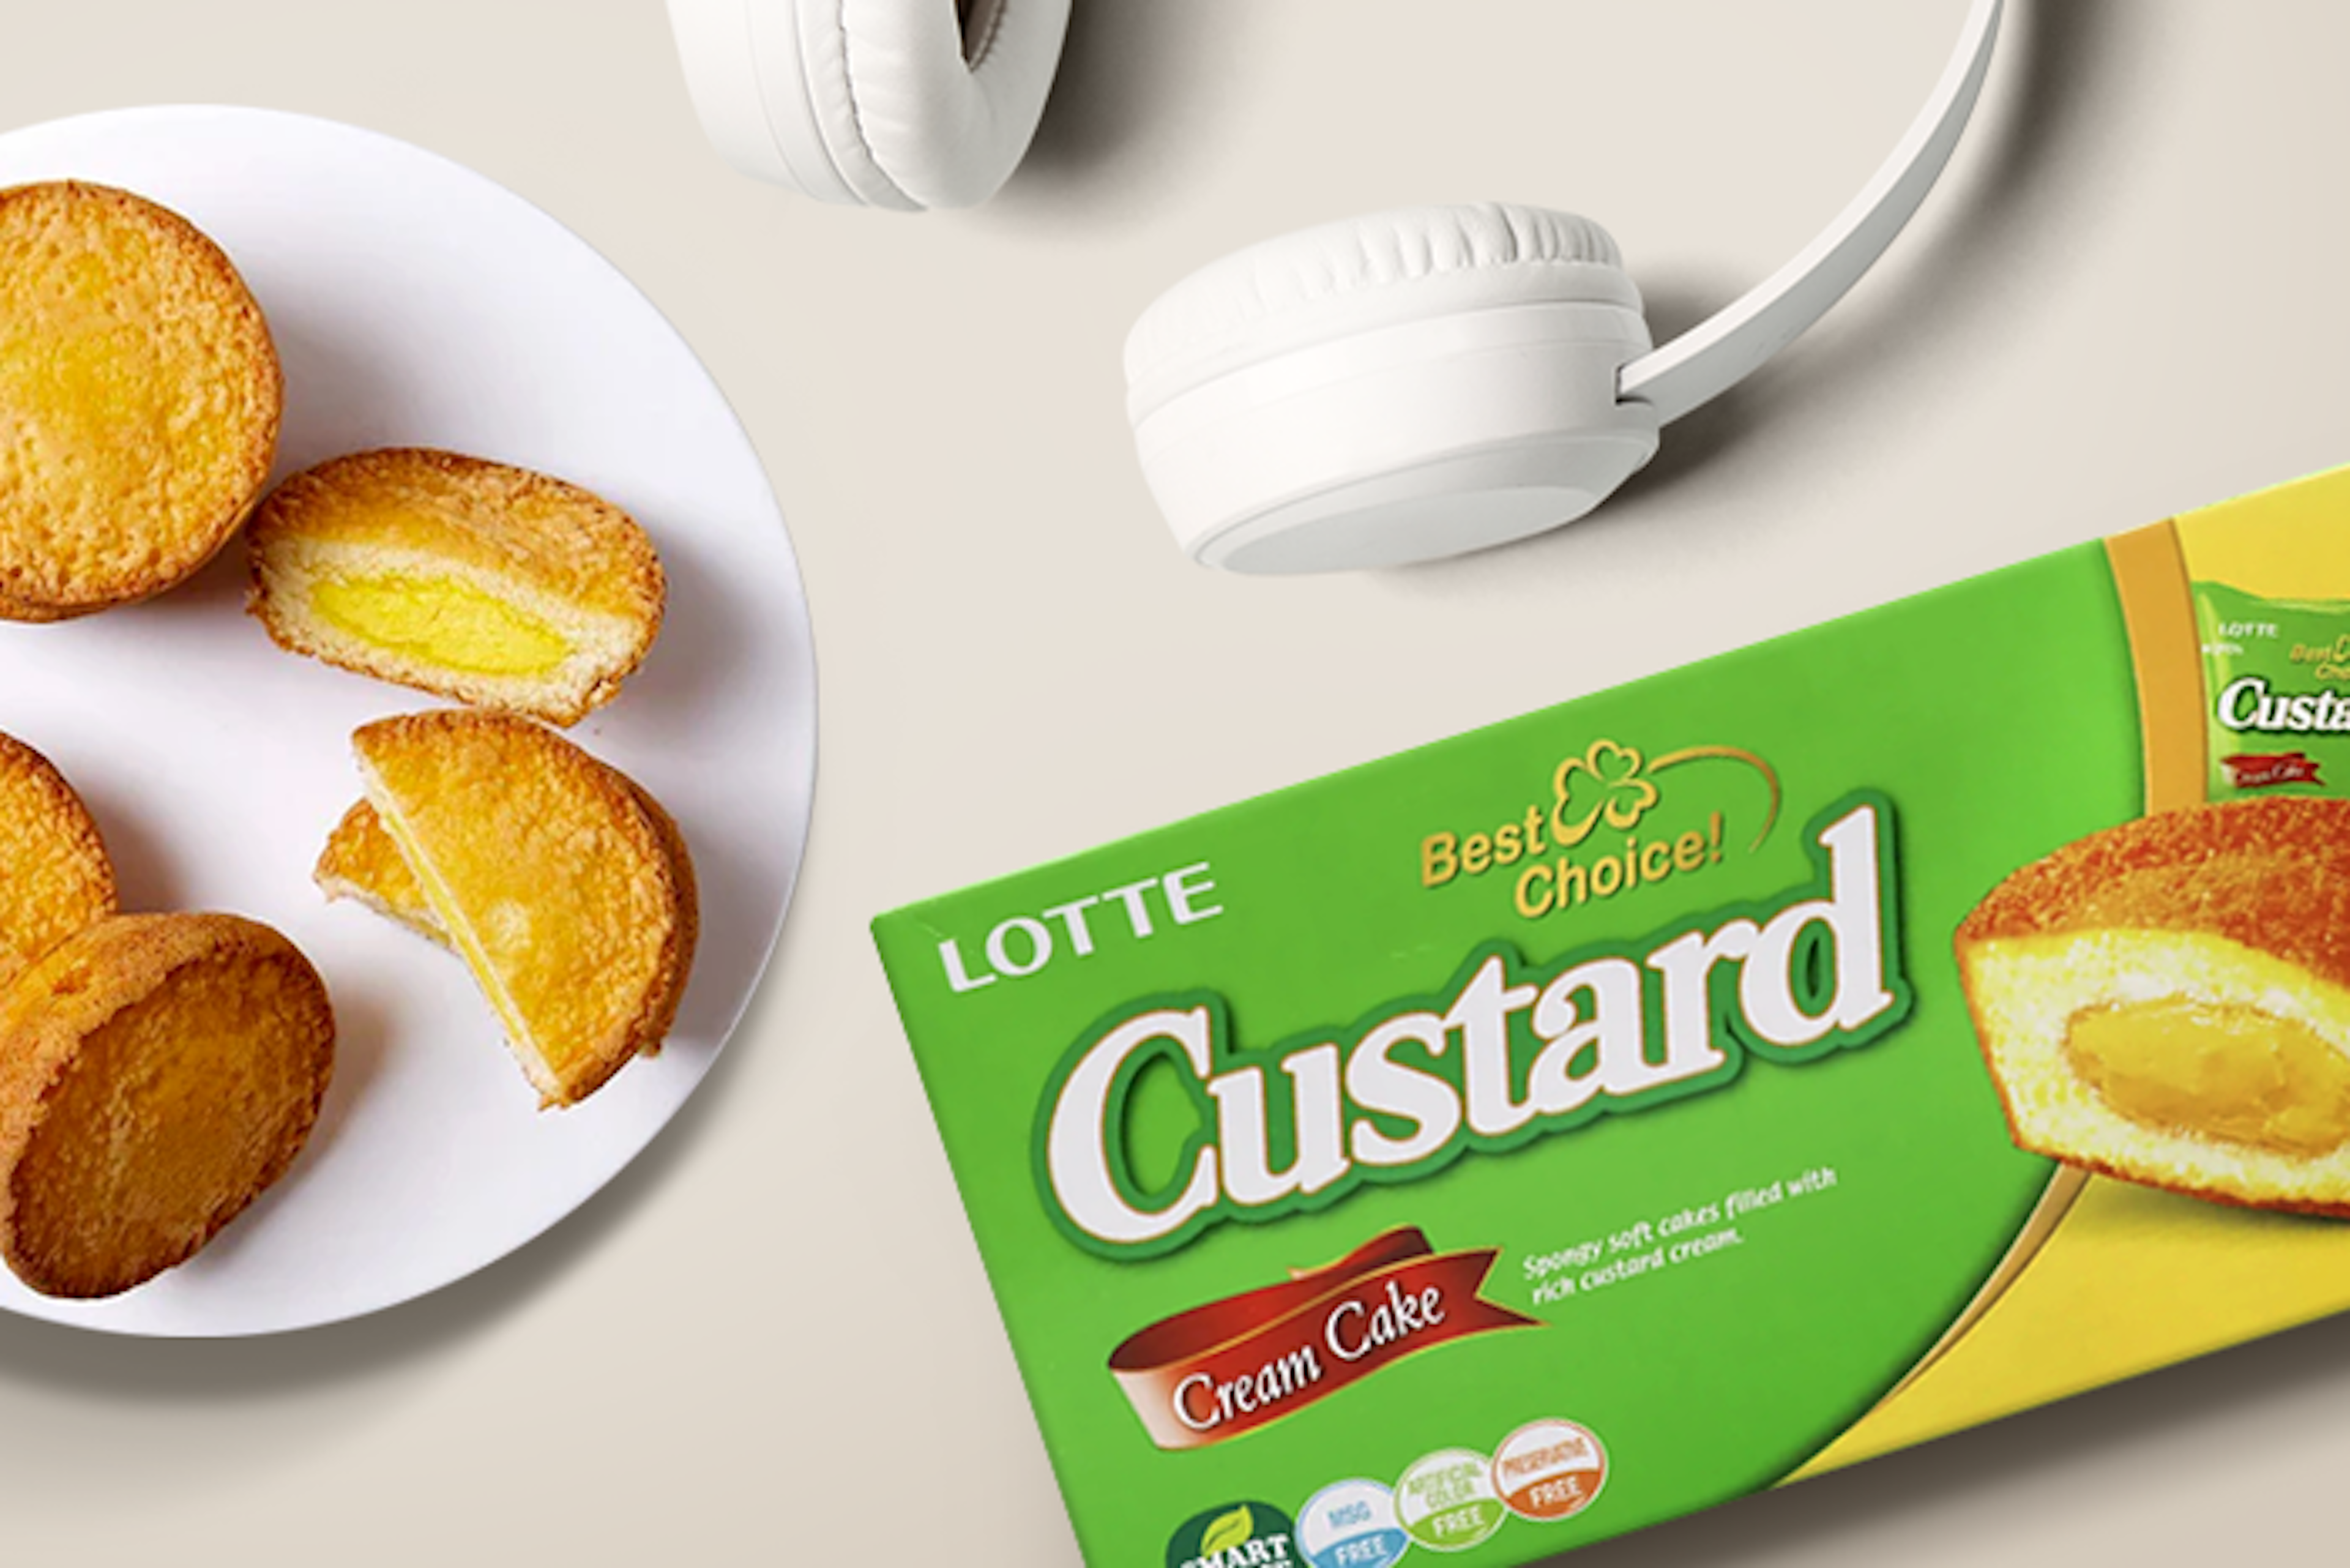 Eine Packung Lotte Custard Cream Cake Snack 138g, die die einzeln verpackten Kuchen zeigt.